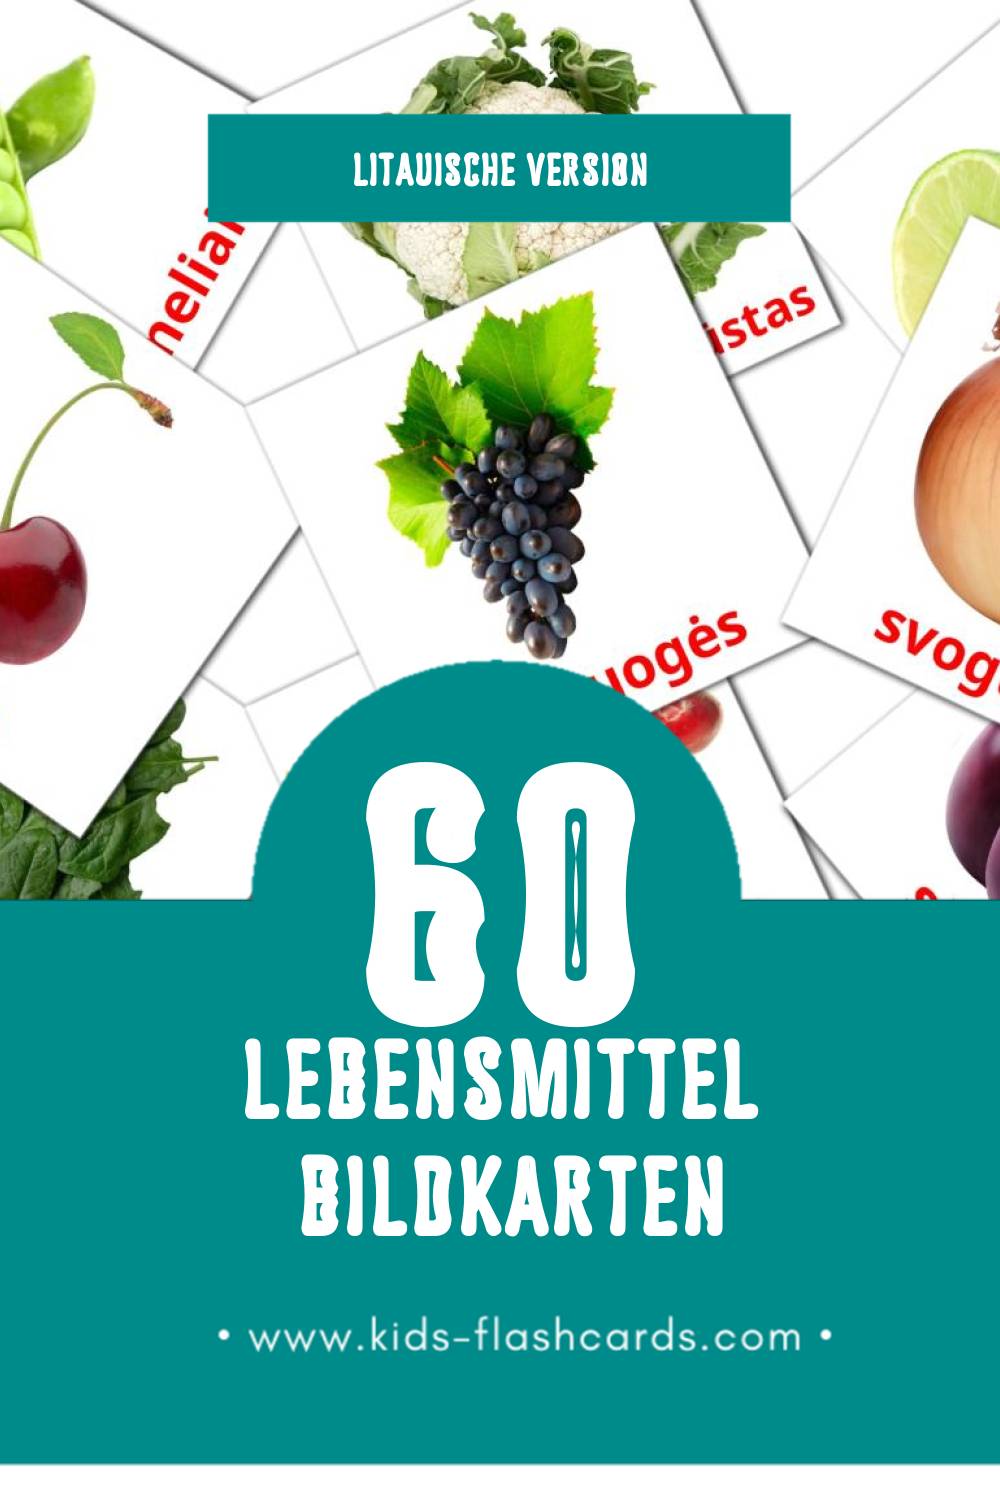 Visual Maistas Flashcards für Kleinkinder (60 Karten in Litauisch)